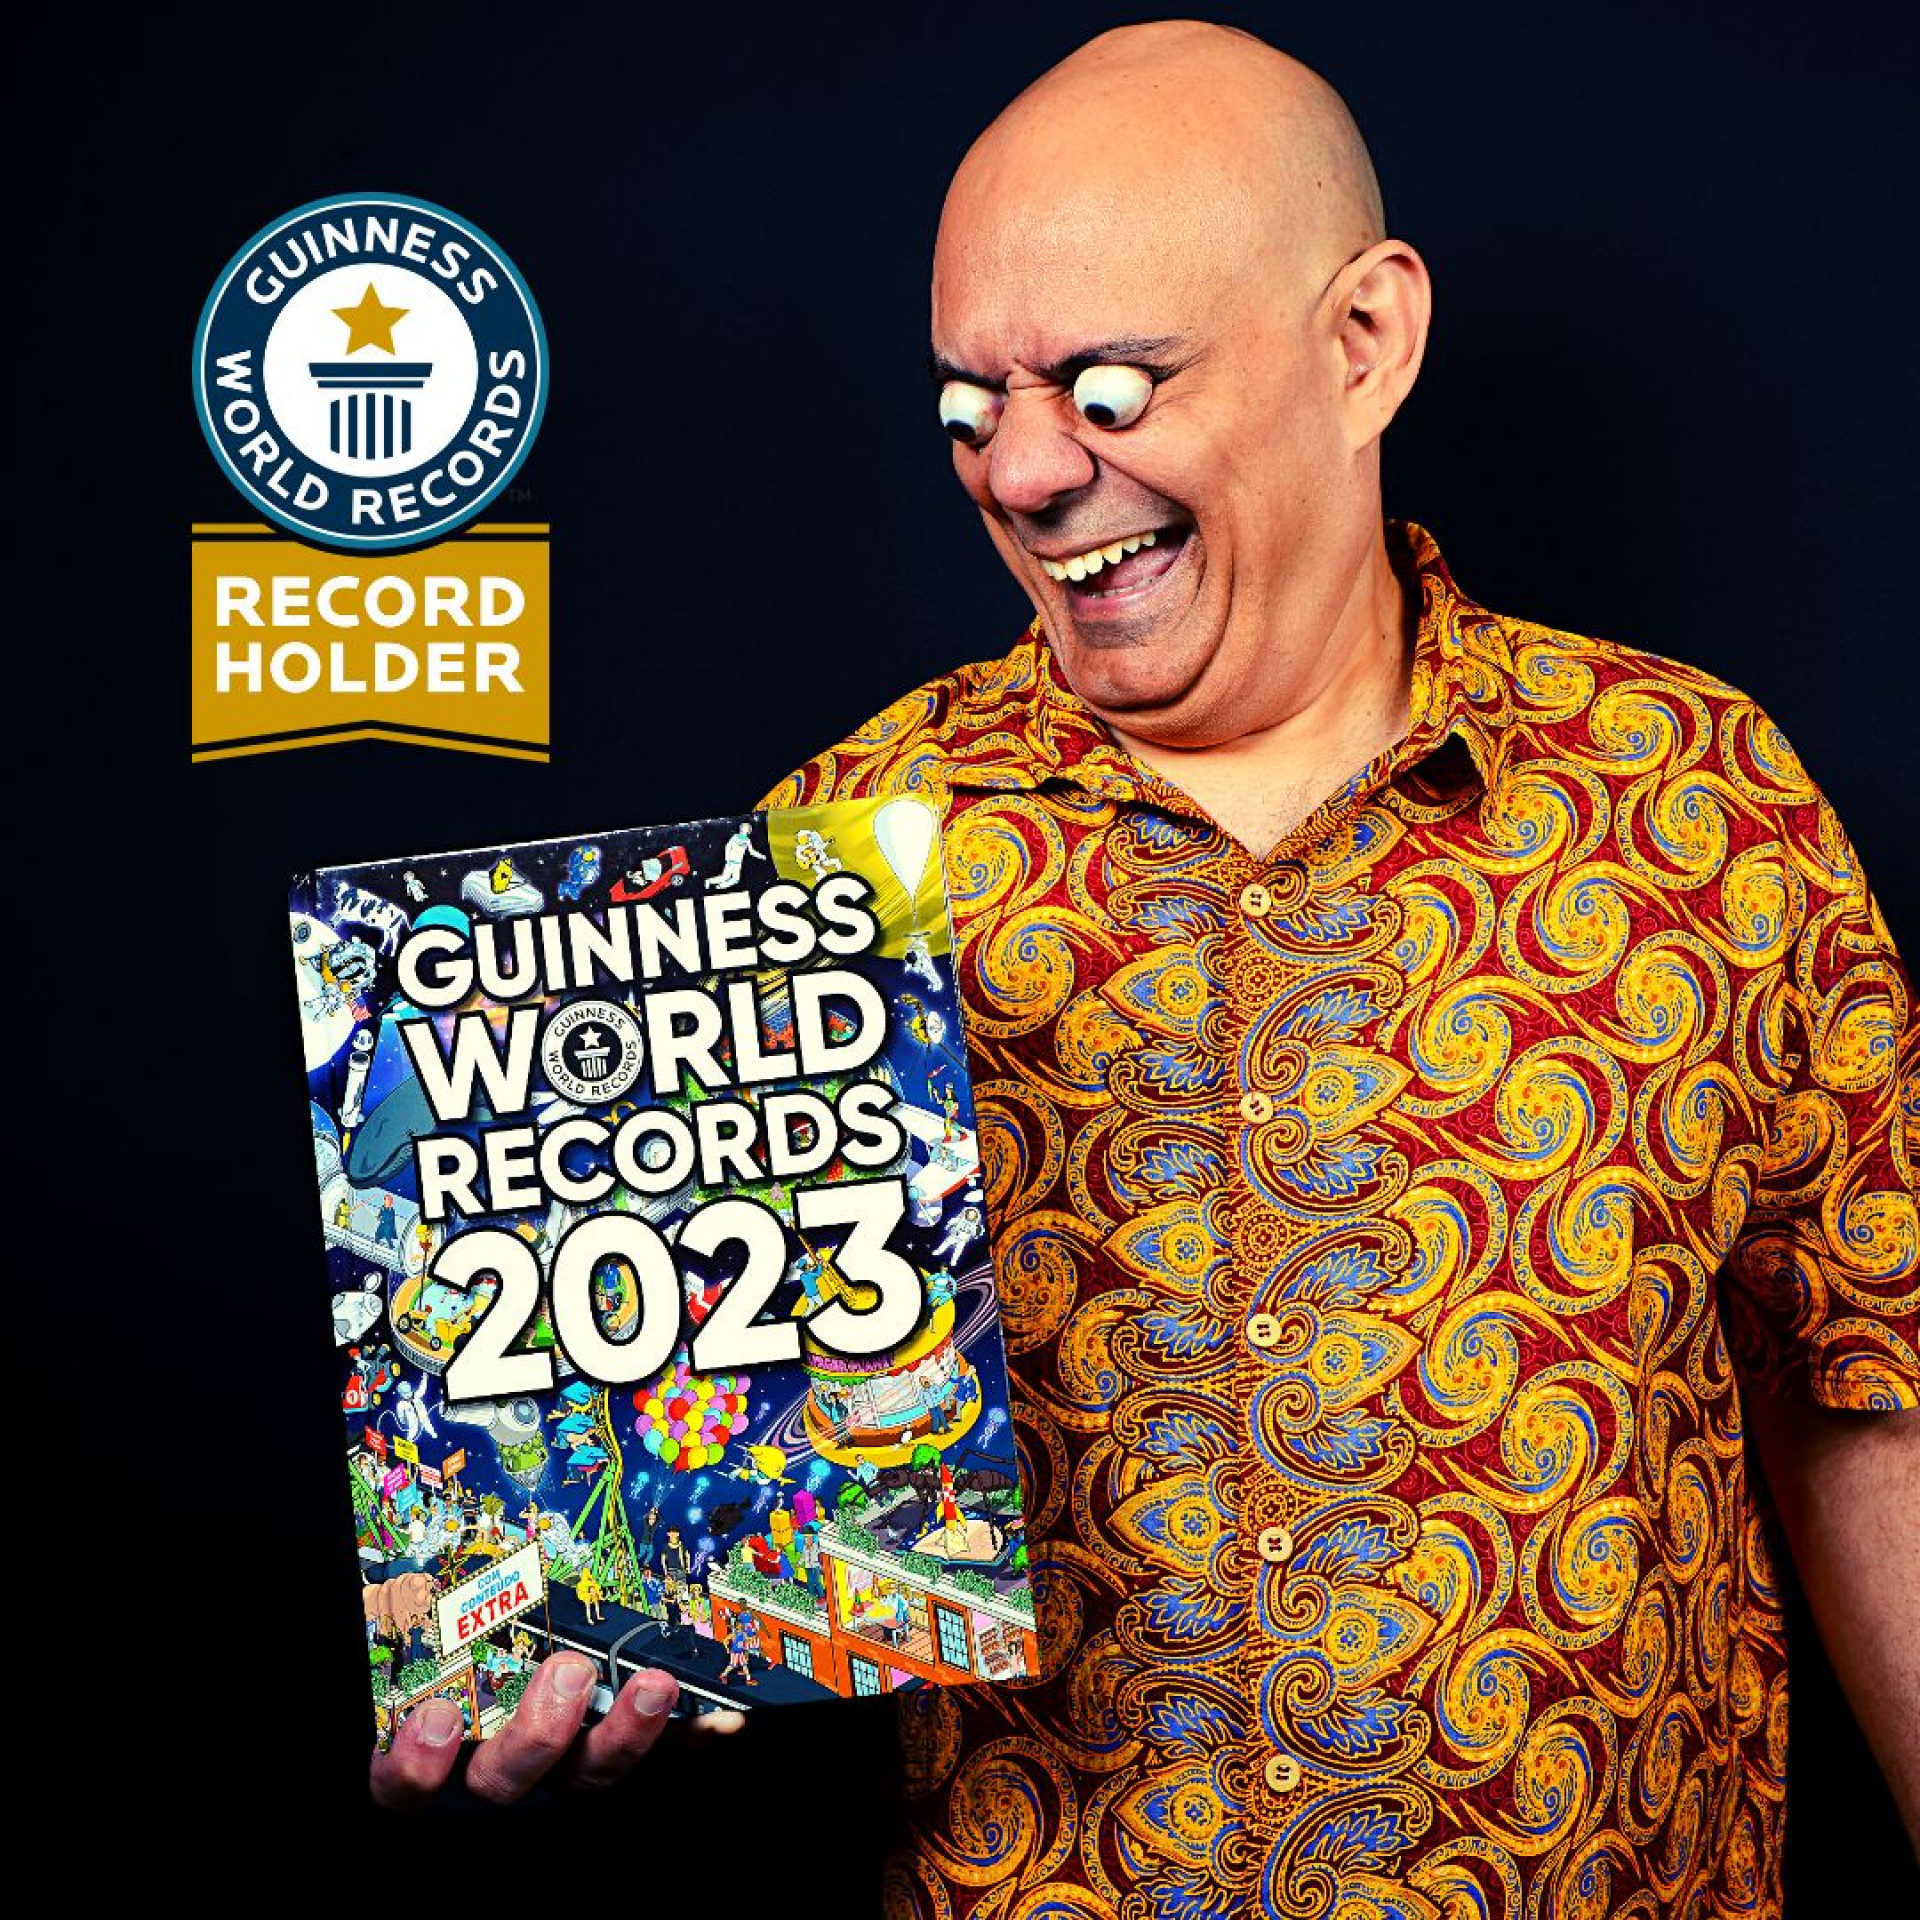 Ilusionistas brasileiros conquistam Guinness World Record por